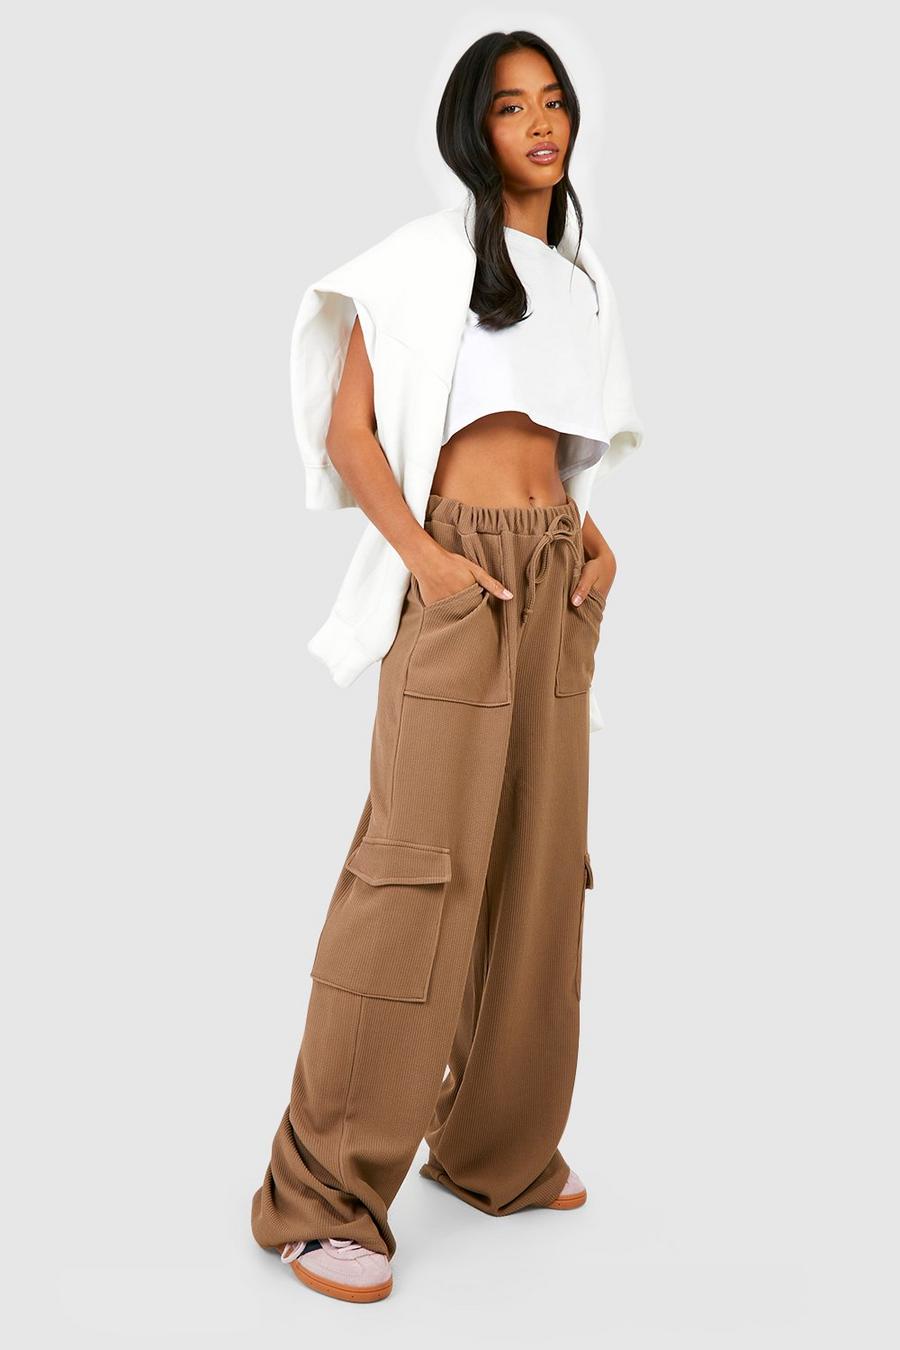 Pantalon cargo - Pantalons cargo femme larges kaki, beige et noir